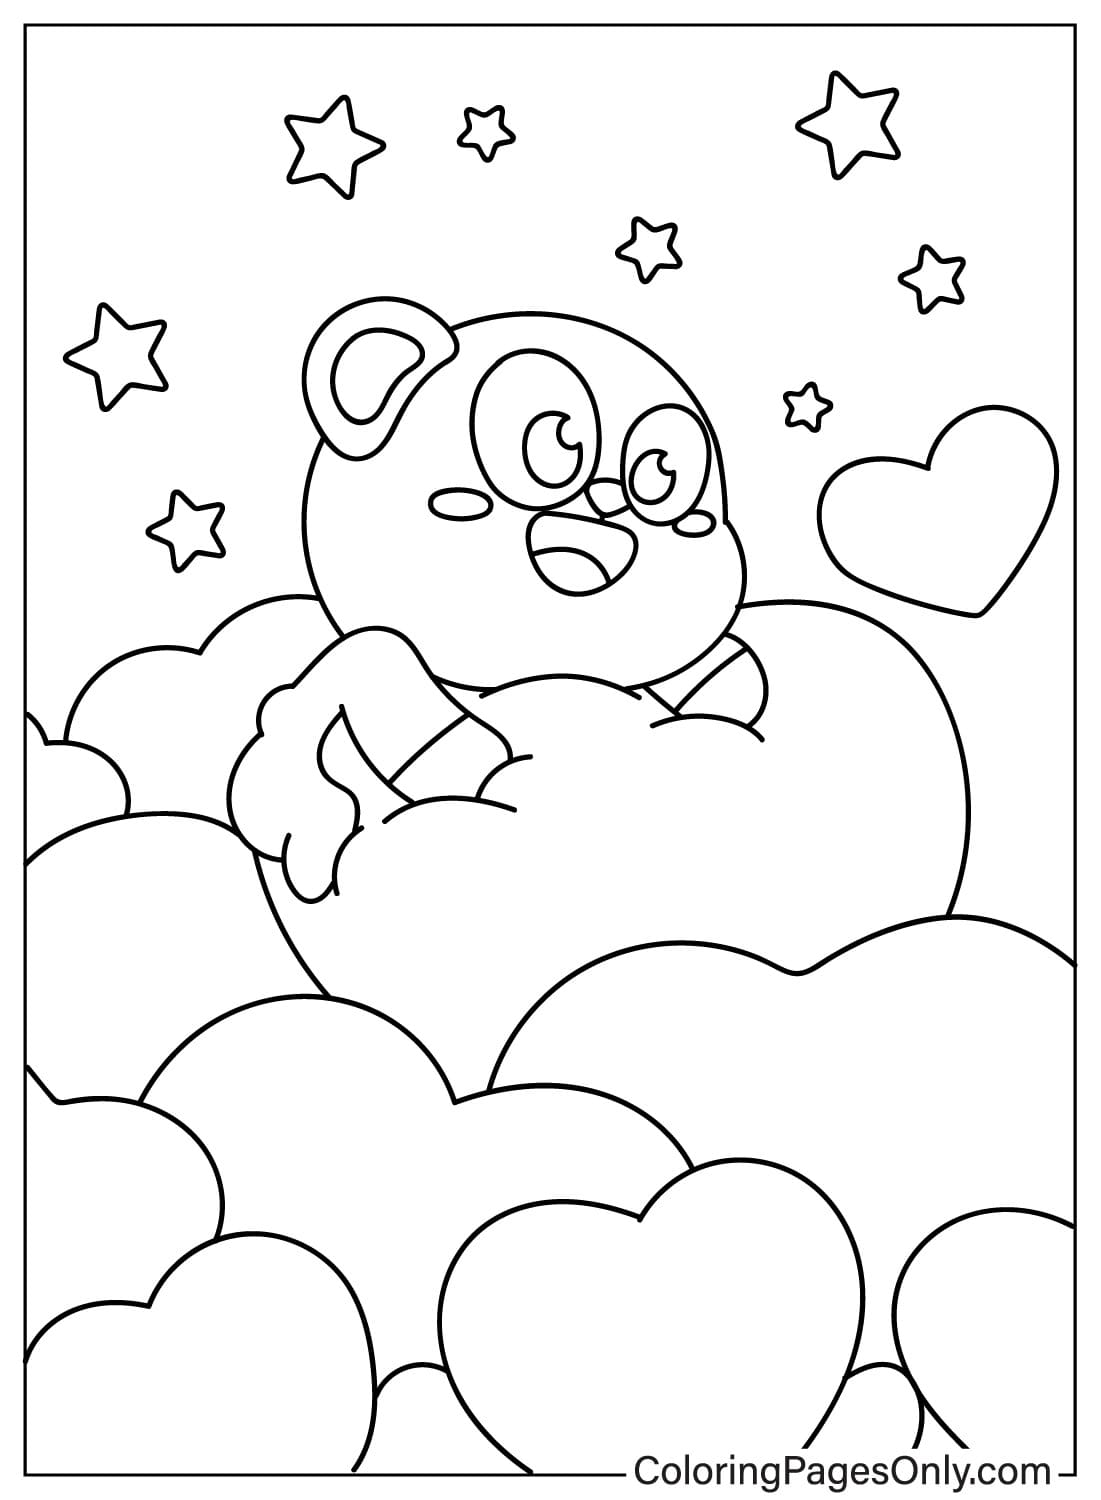 Página para colorear de lindo oso de peluche y corazón